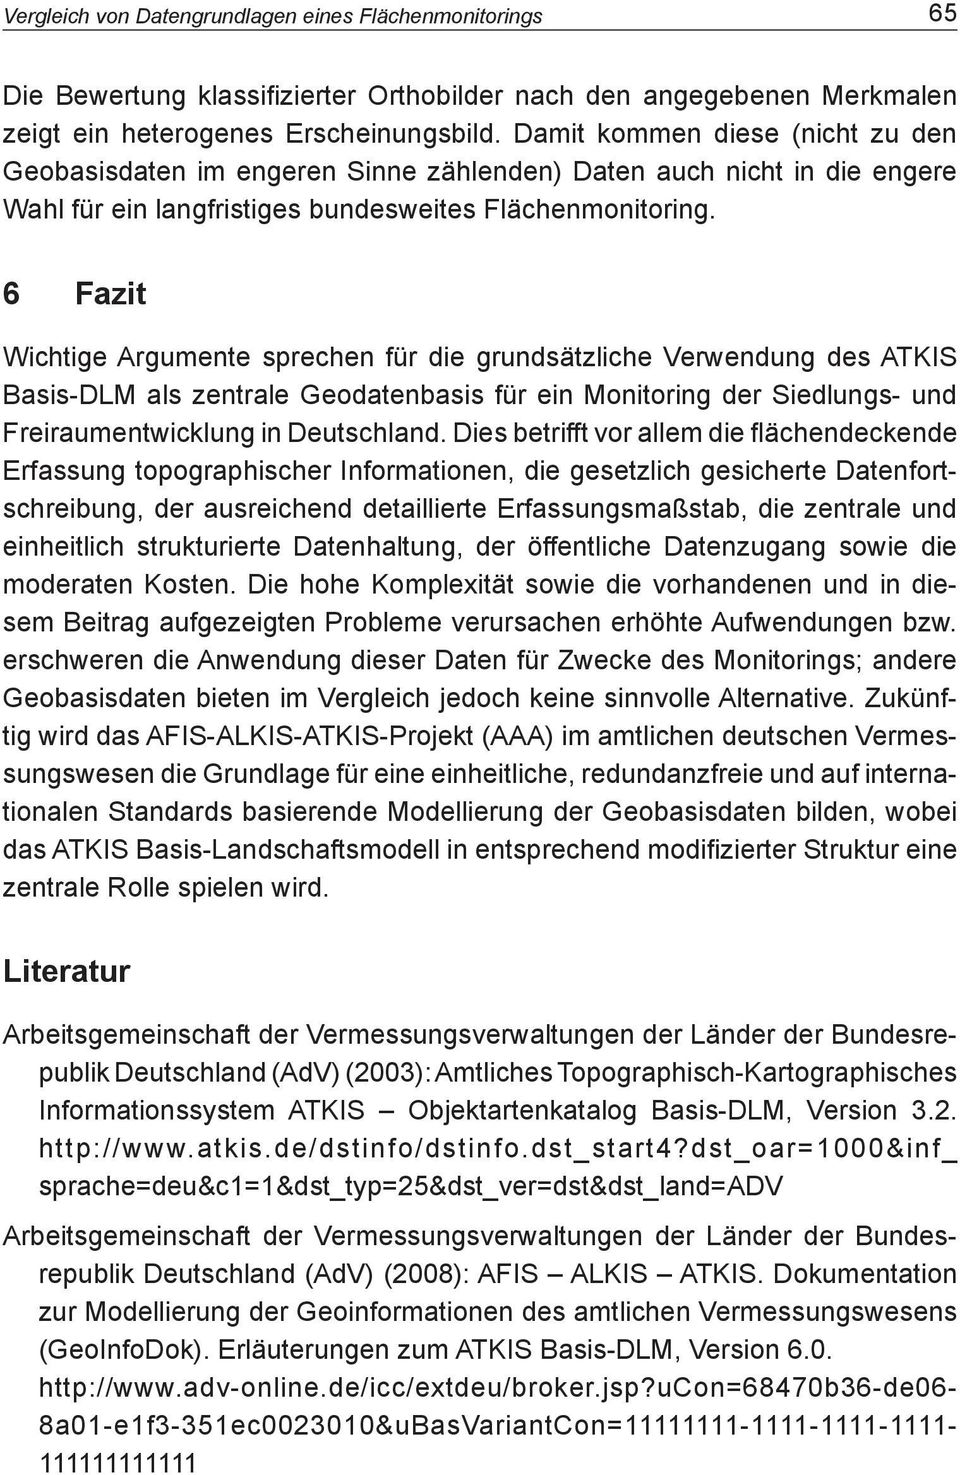 6 Fazit Wichtige Argumente sprechen für die grundsätzliche Verwendung des ATKIS Basis-DLM als zentrale Geodatenbasis für ein Monitoring der Siedlungs- und Freiraumentwicklung in Deutschland.